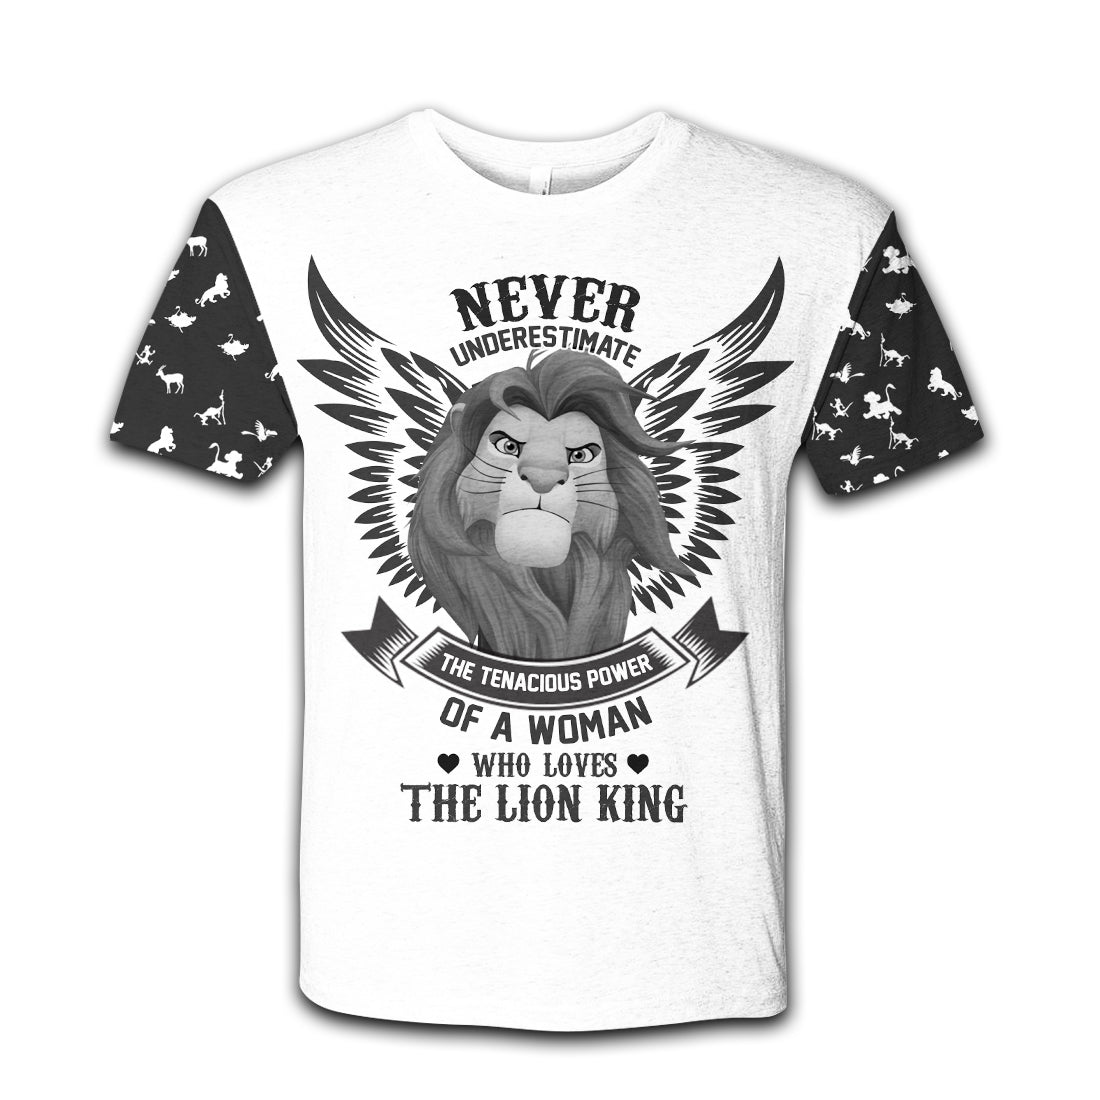 Unifinz DN LK T-shirt Never Underestimate Lion King T-shirt Awesome DN LK Hoodie Sweater Tank 2026